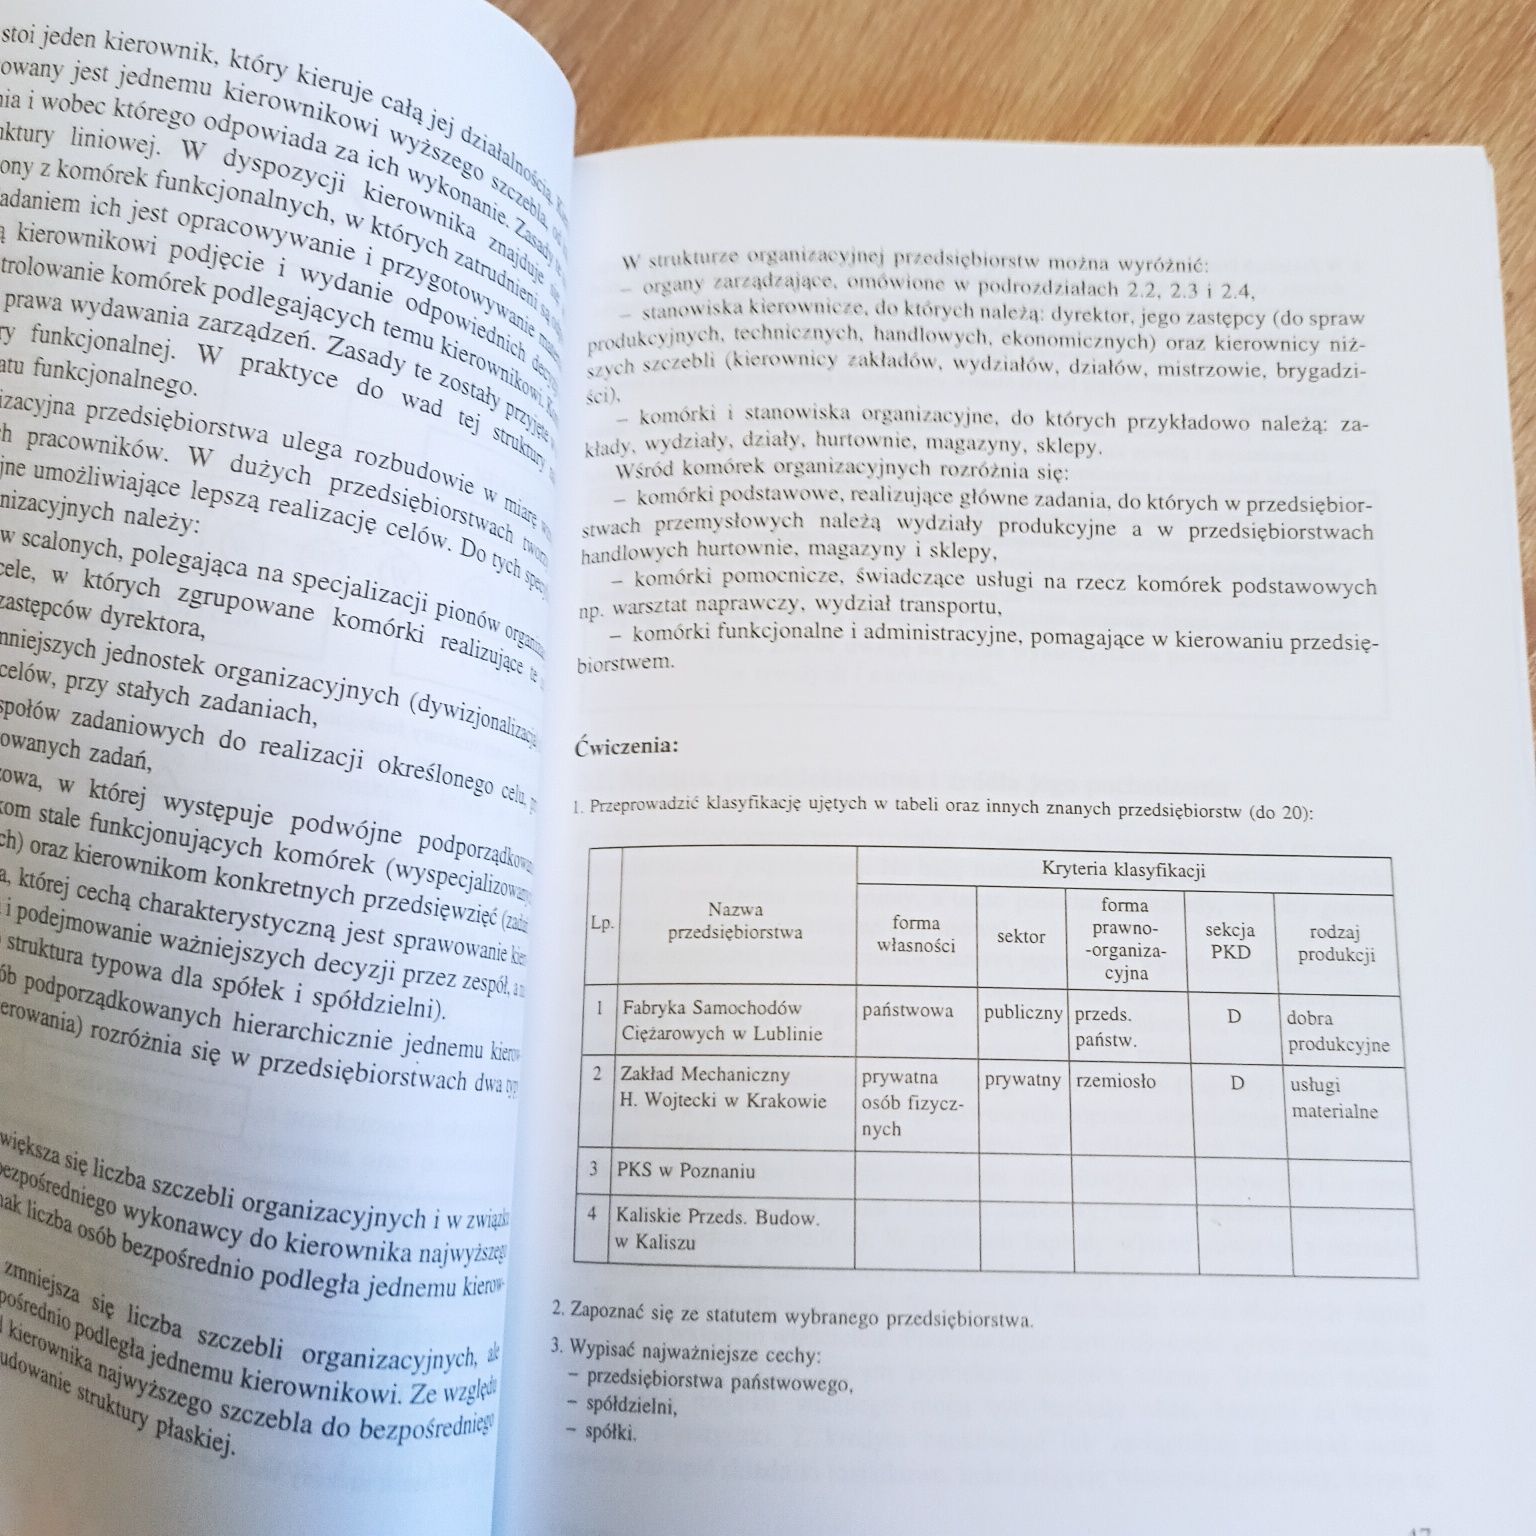 Ekonomika przedsiębiorstw Pietraszewski 1998 podręcznik